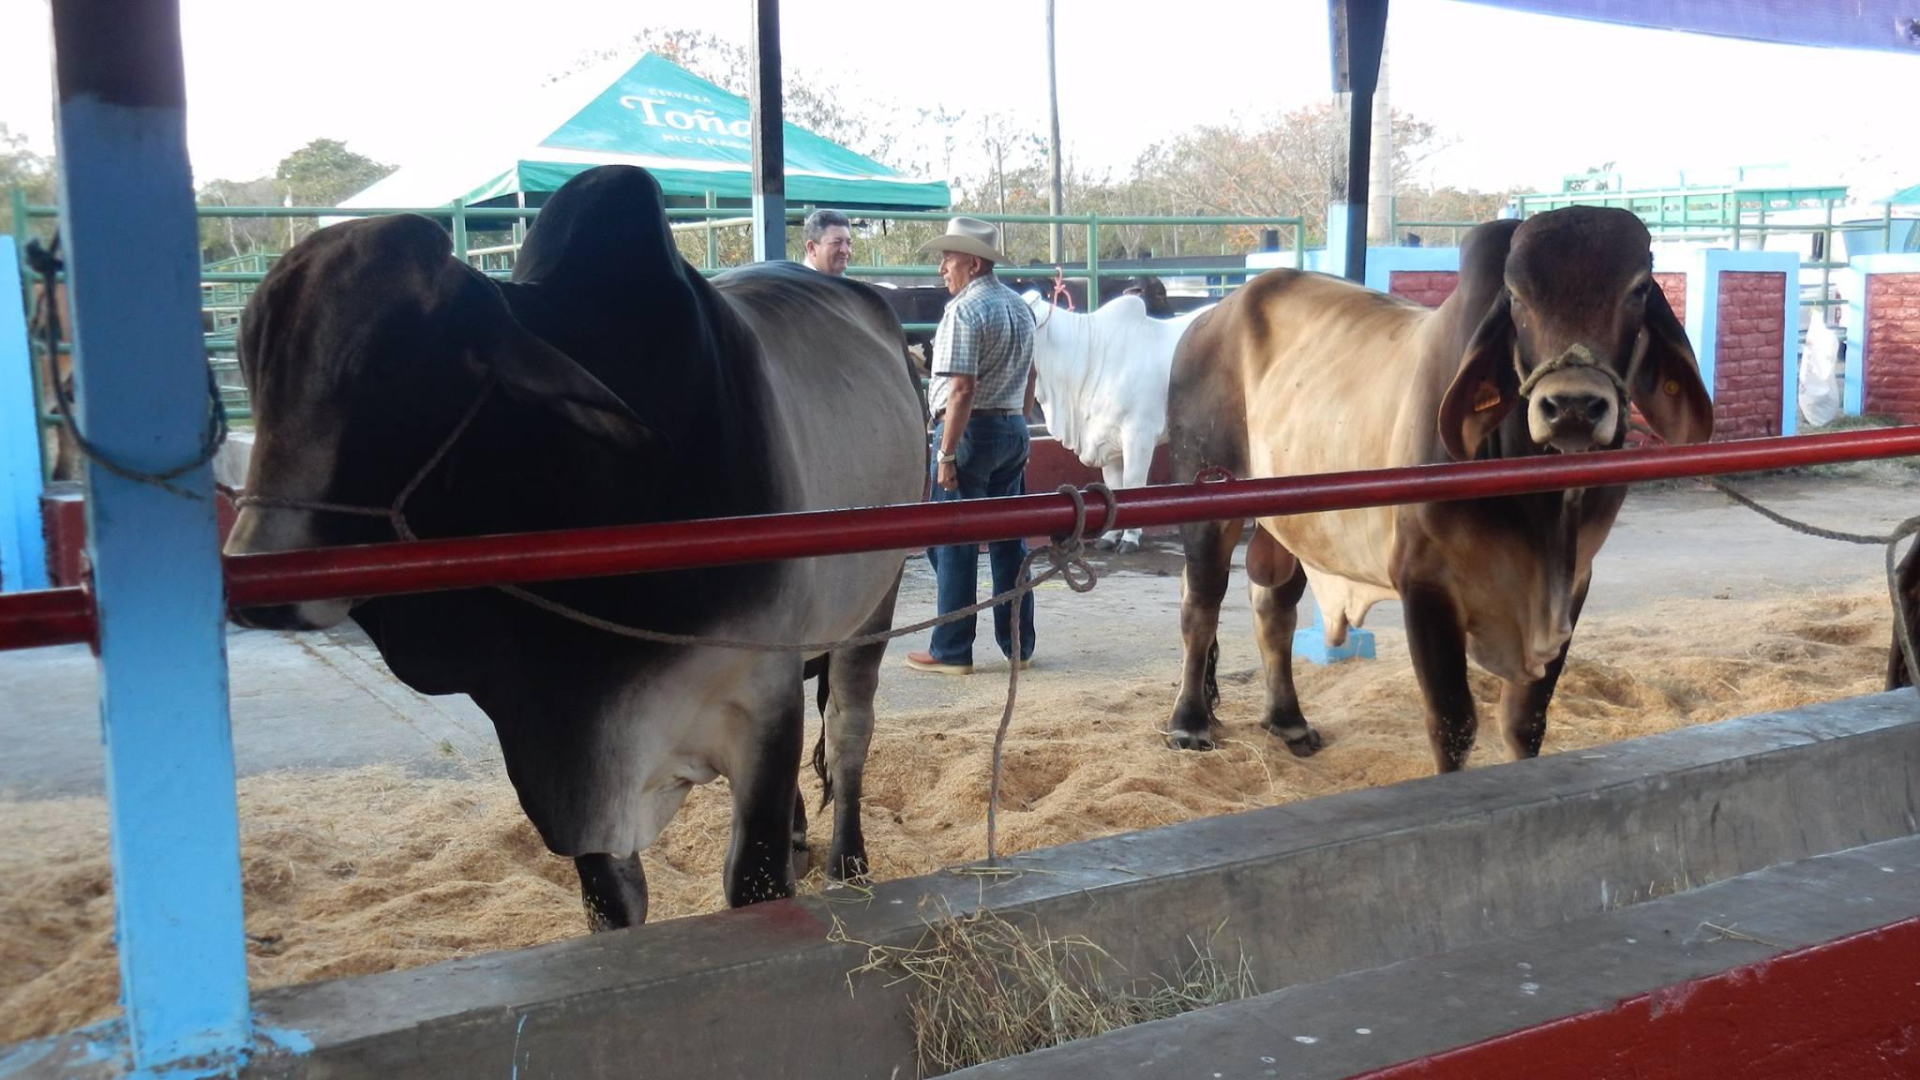 Alrededor de 400 ejemplares bovinos estarán disponibles en las galerías de exhibición durante la feria ganadera.